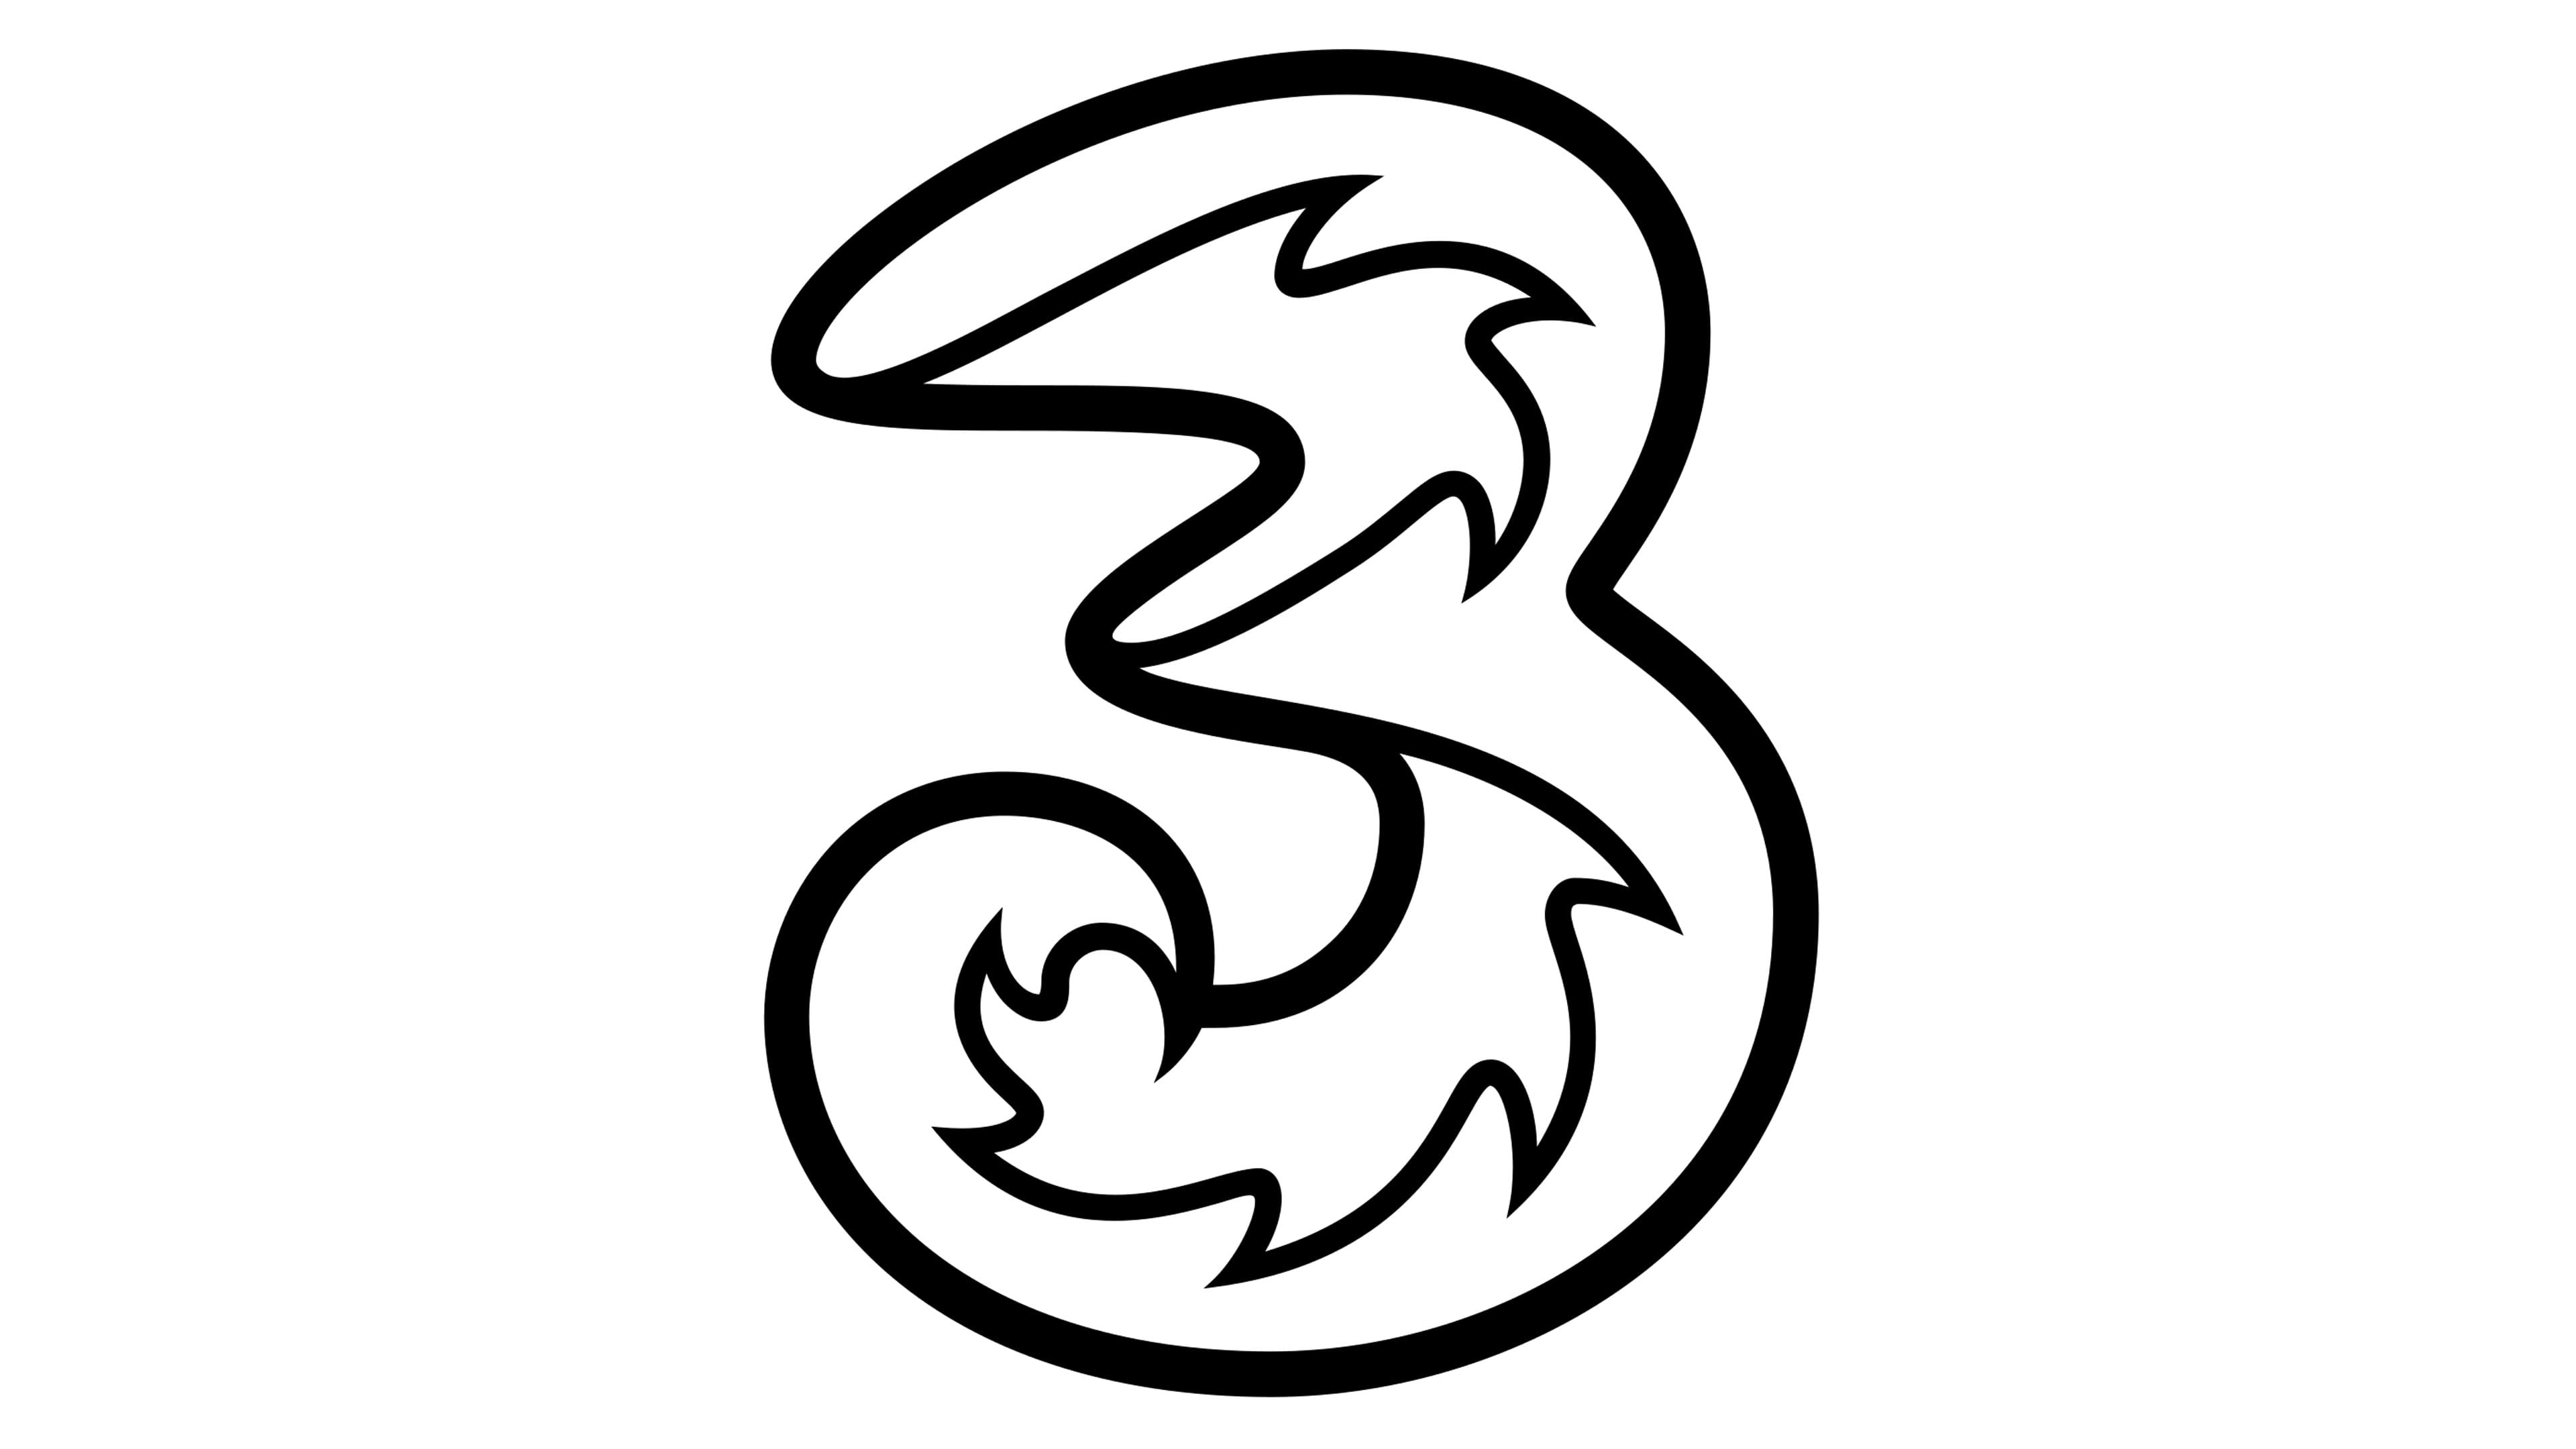 threes company logo